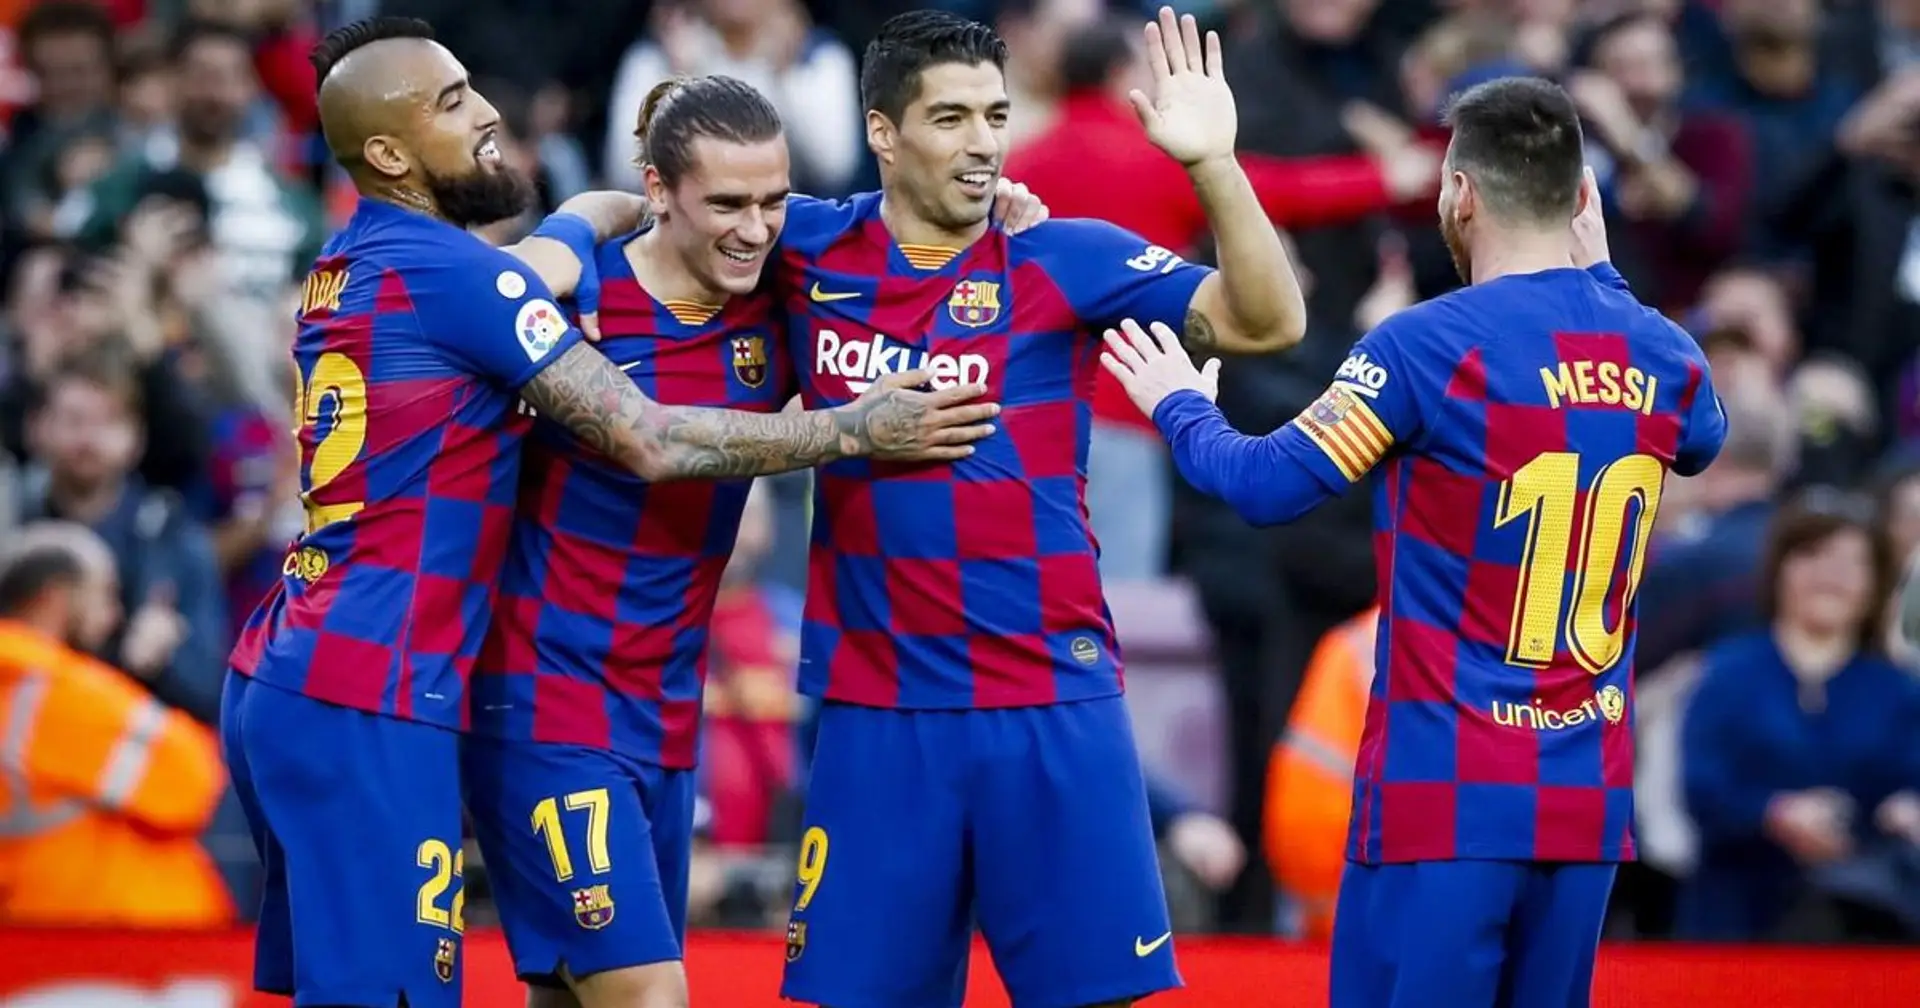 Se abre el mercado de fichajes y el Barça inicia su travesía para incorporar, vender o ceder jugadores